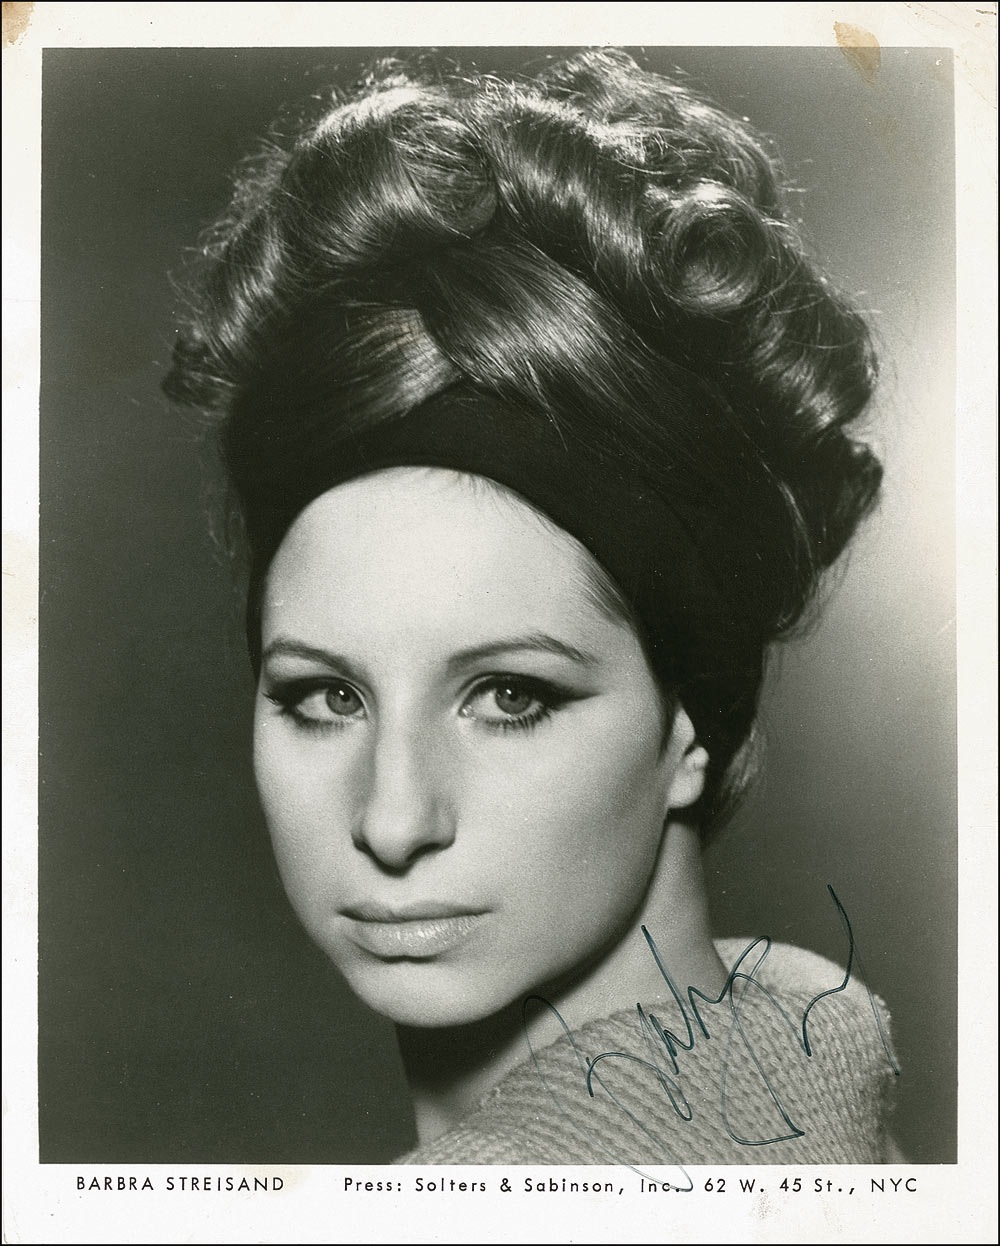 Lot #929 Barbra Streisand